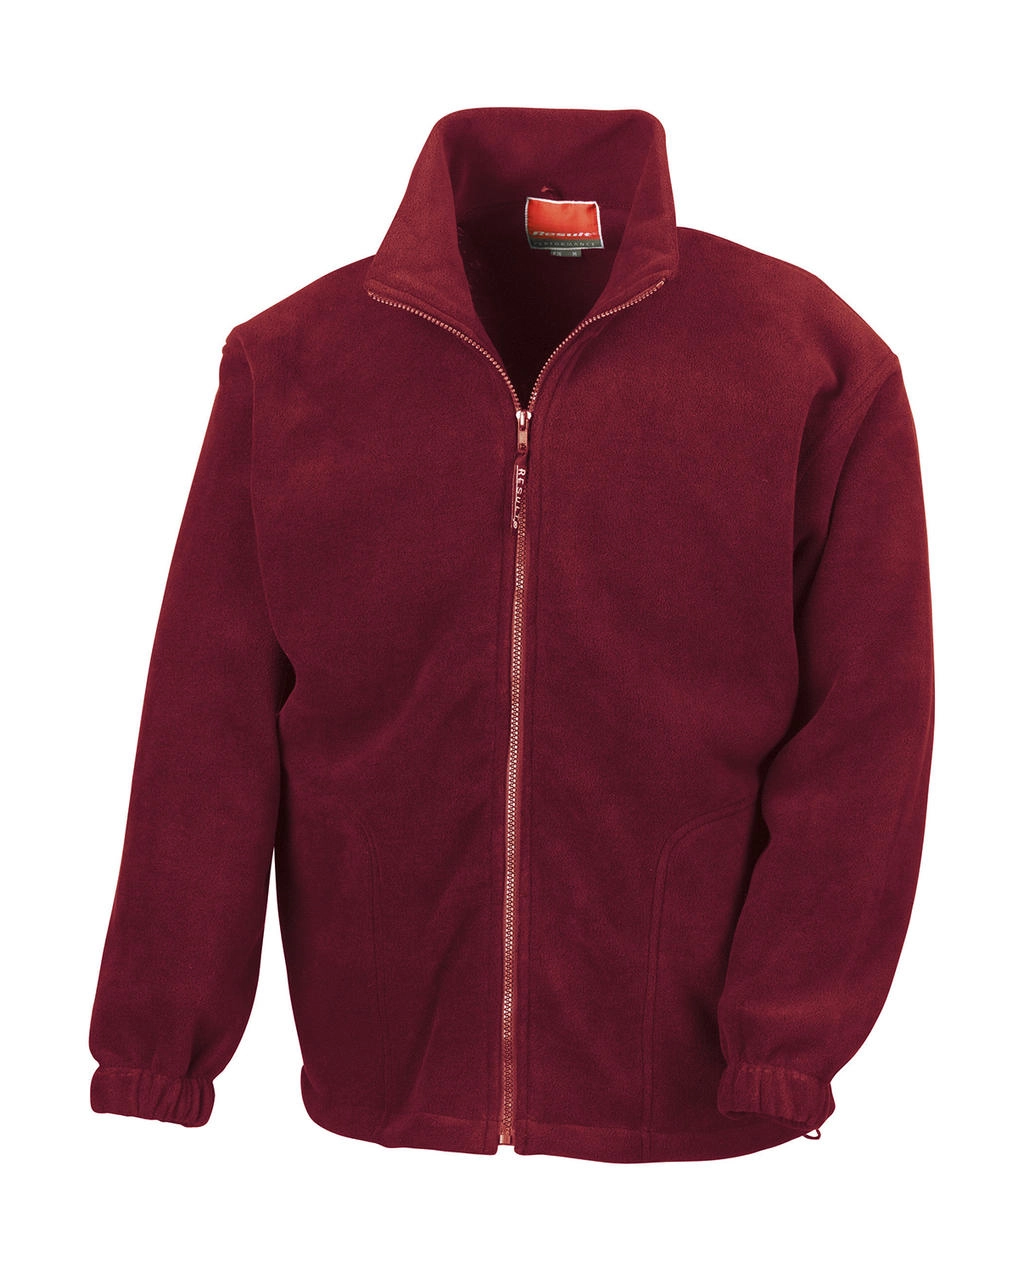 Polartherm™ Jacket zum Besticken und Bedrucken in der Farbe Burgundy mit Ihren Logo, Schriftzug oder Motiv.